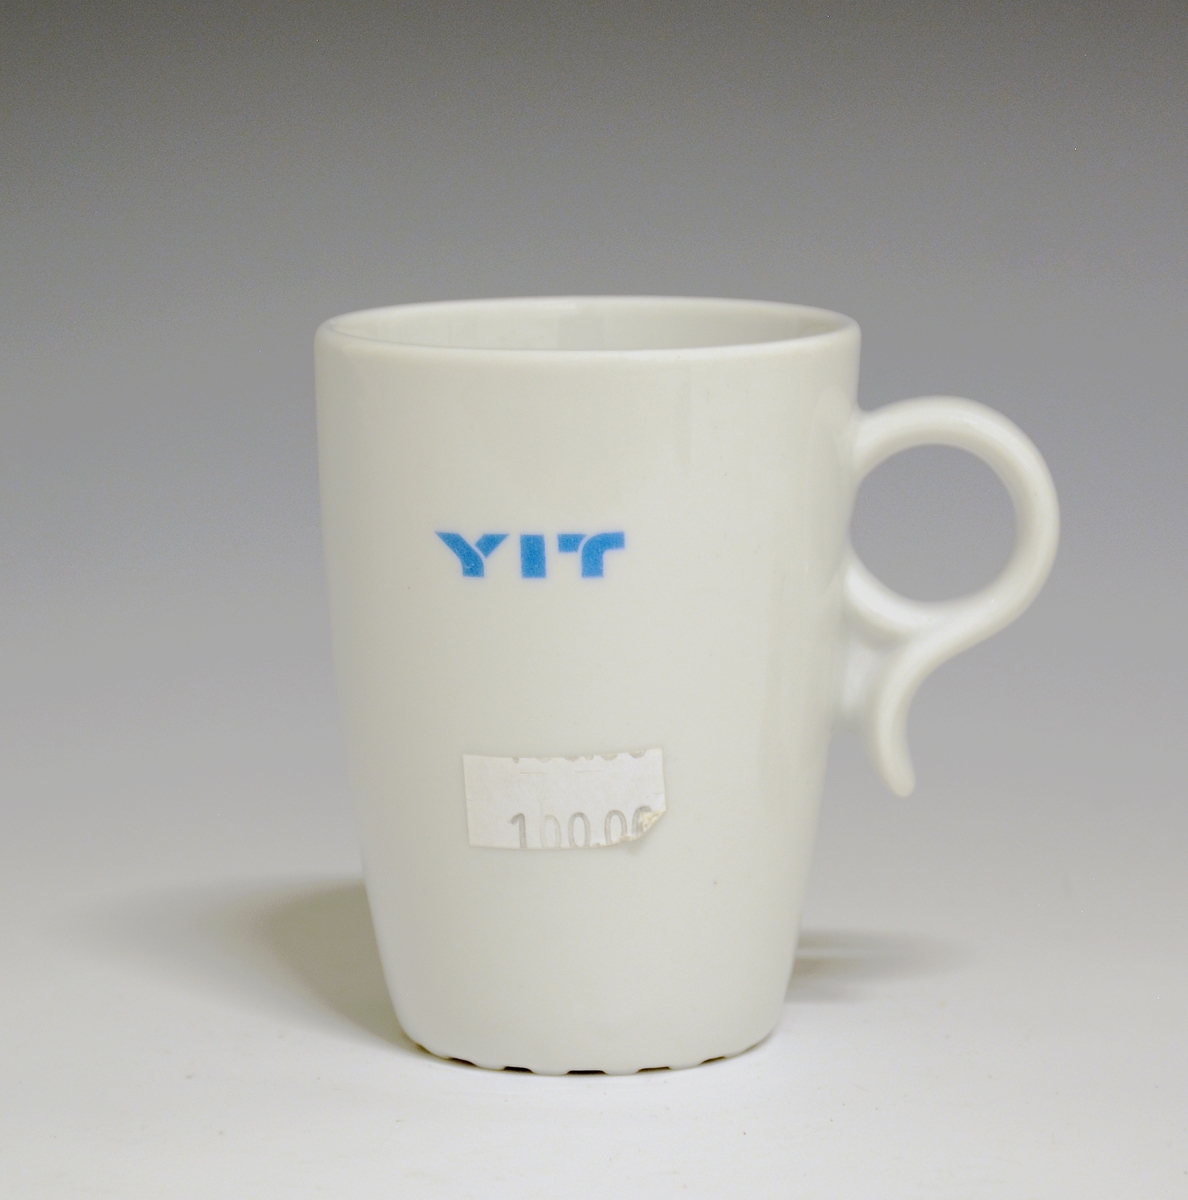 Krus av porselen med  hvit glasur. Trykkdekor med påskriften: "YIT".
Modell: 2731, Victor.
